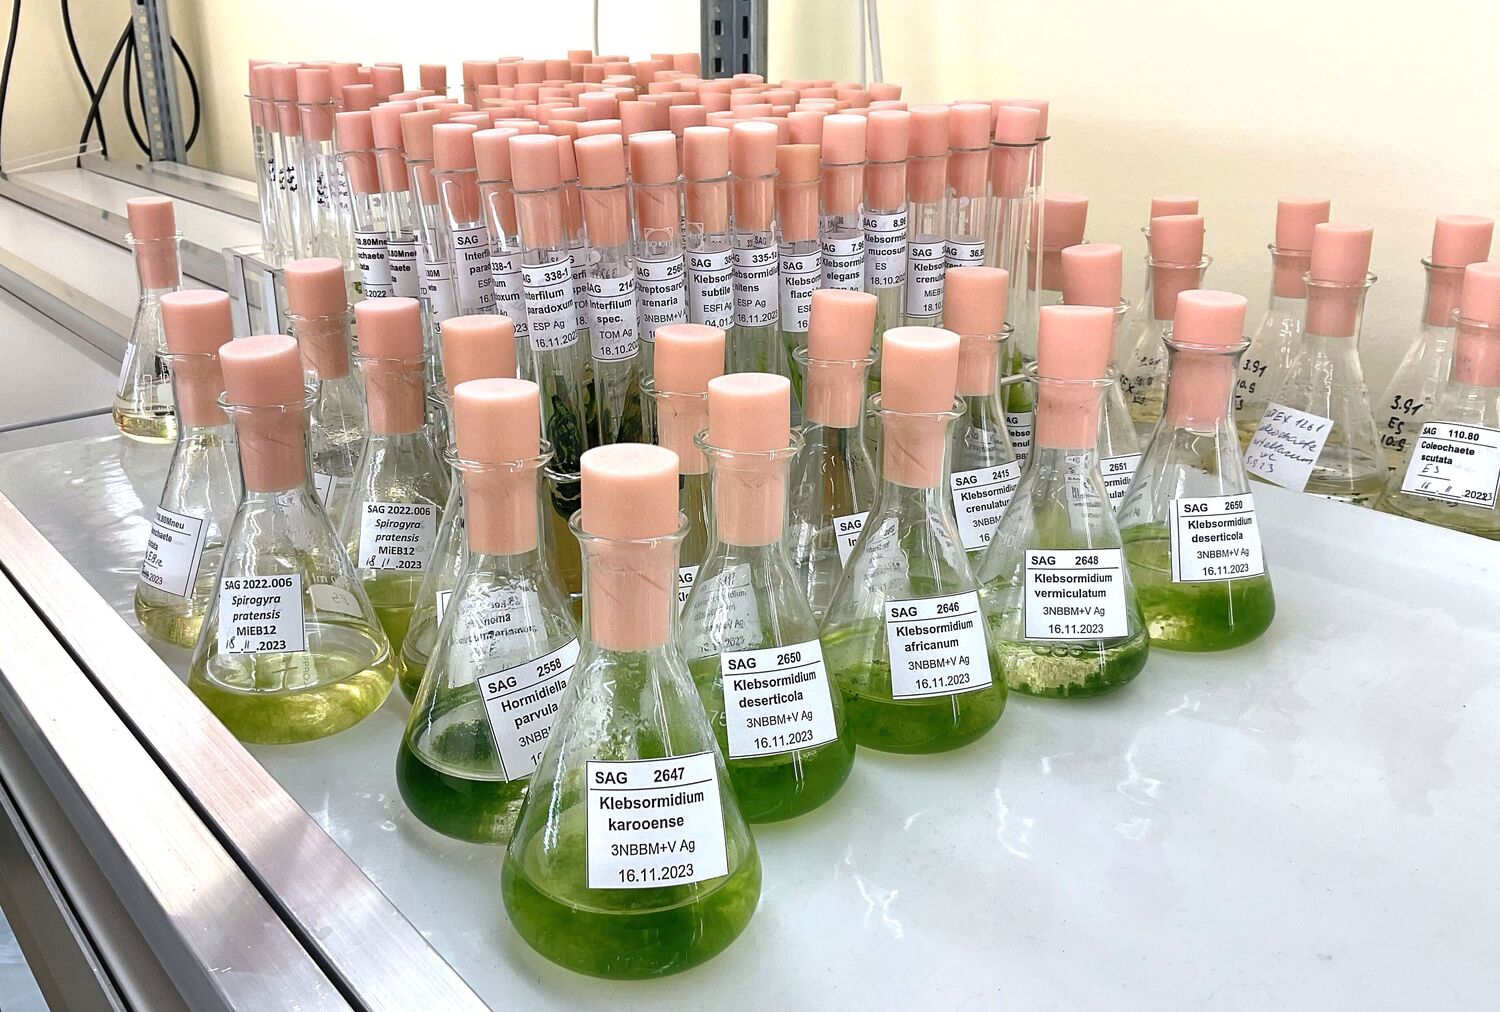 Flüssige Proben verschiedener Arten von Grünalgen der Gruppe Klebsormidiophyceae, die in der Sammlung von Algenkulturen der Universität Göttingen (SAG) gelagert sind